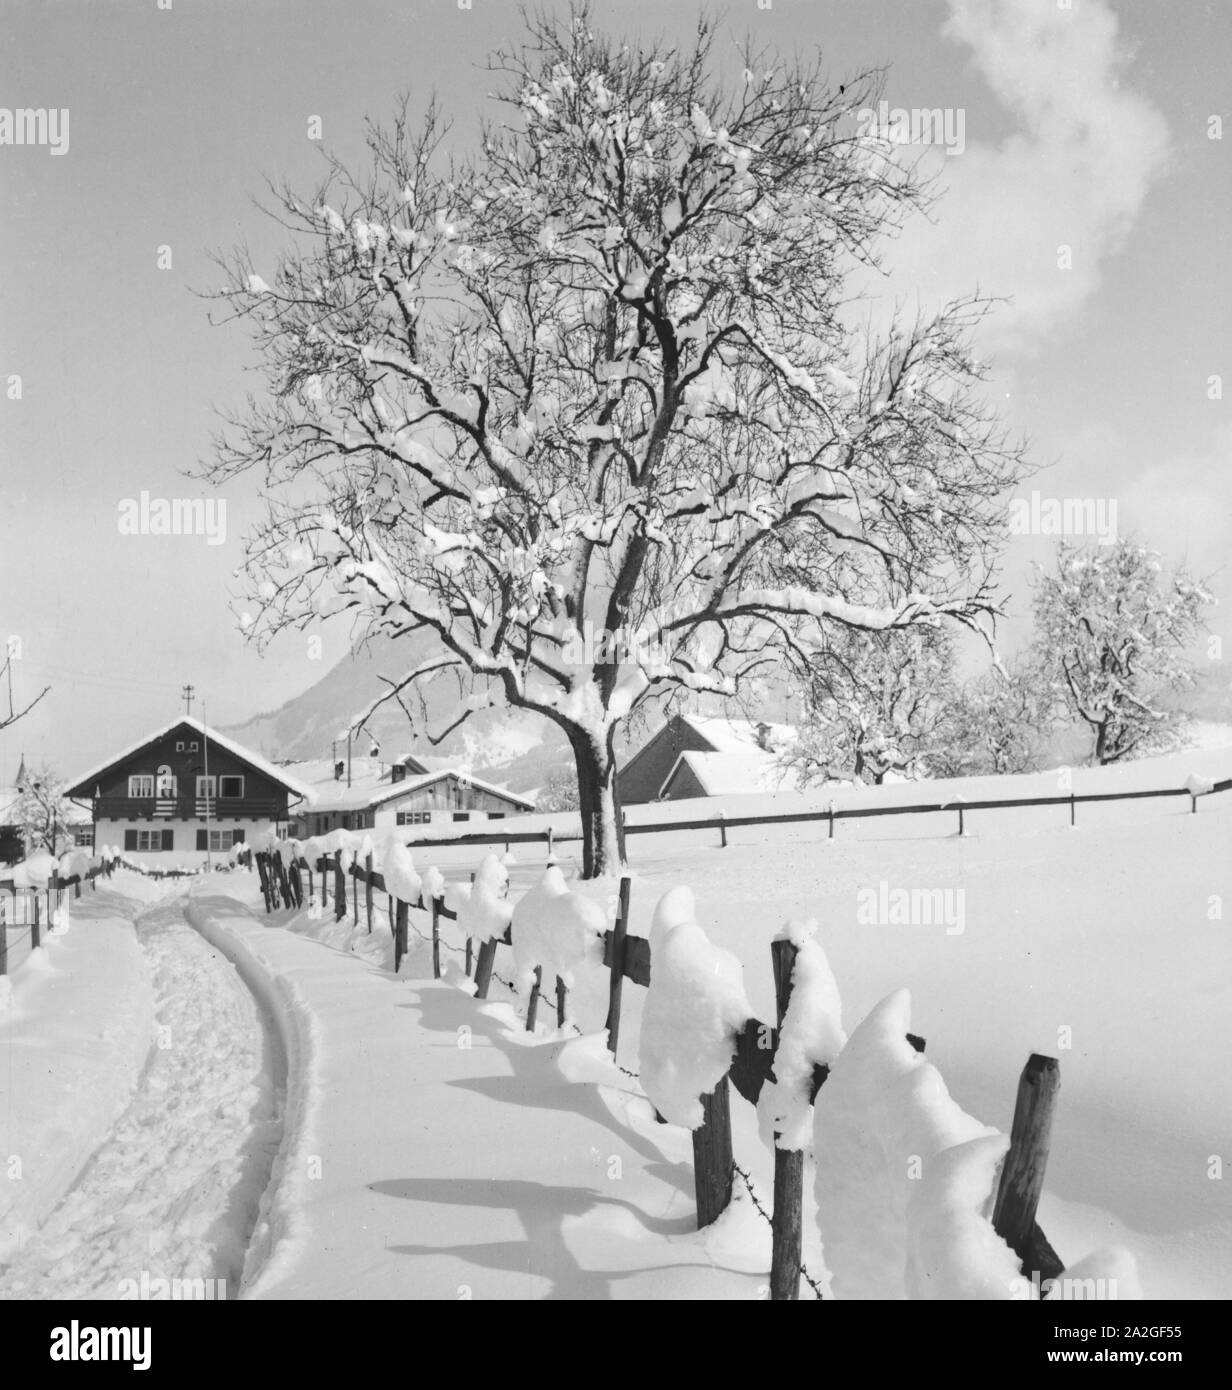 Winterurlaub im im Arlberger Terre, …sterreich er Jahre 1930. L'Arlberg vacances d'hiver à l'Autriche, 1930. Banque D'Images